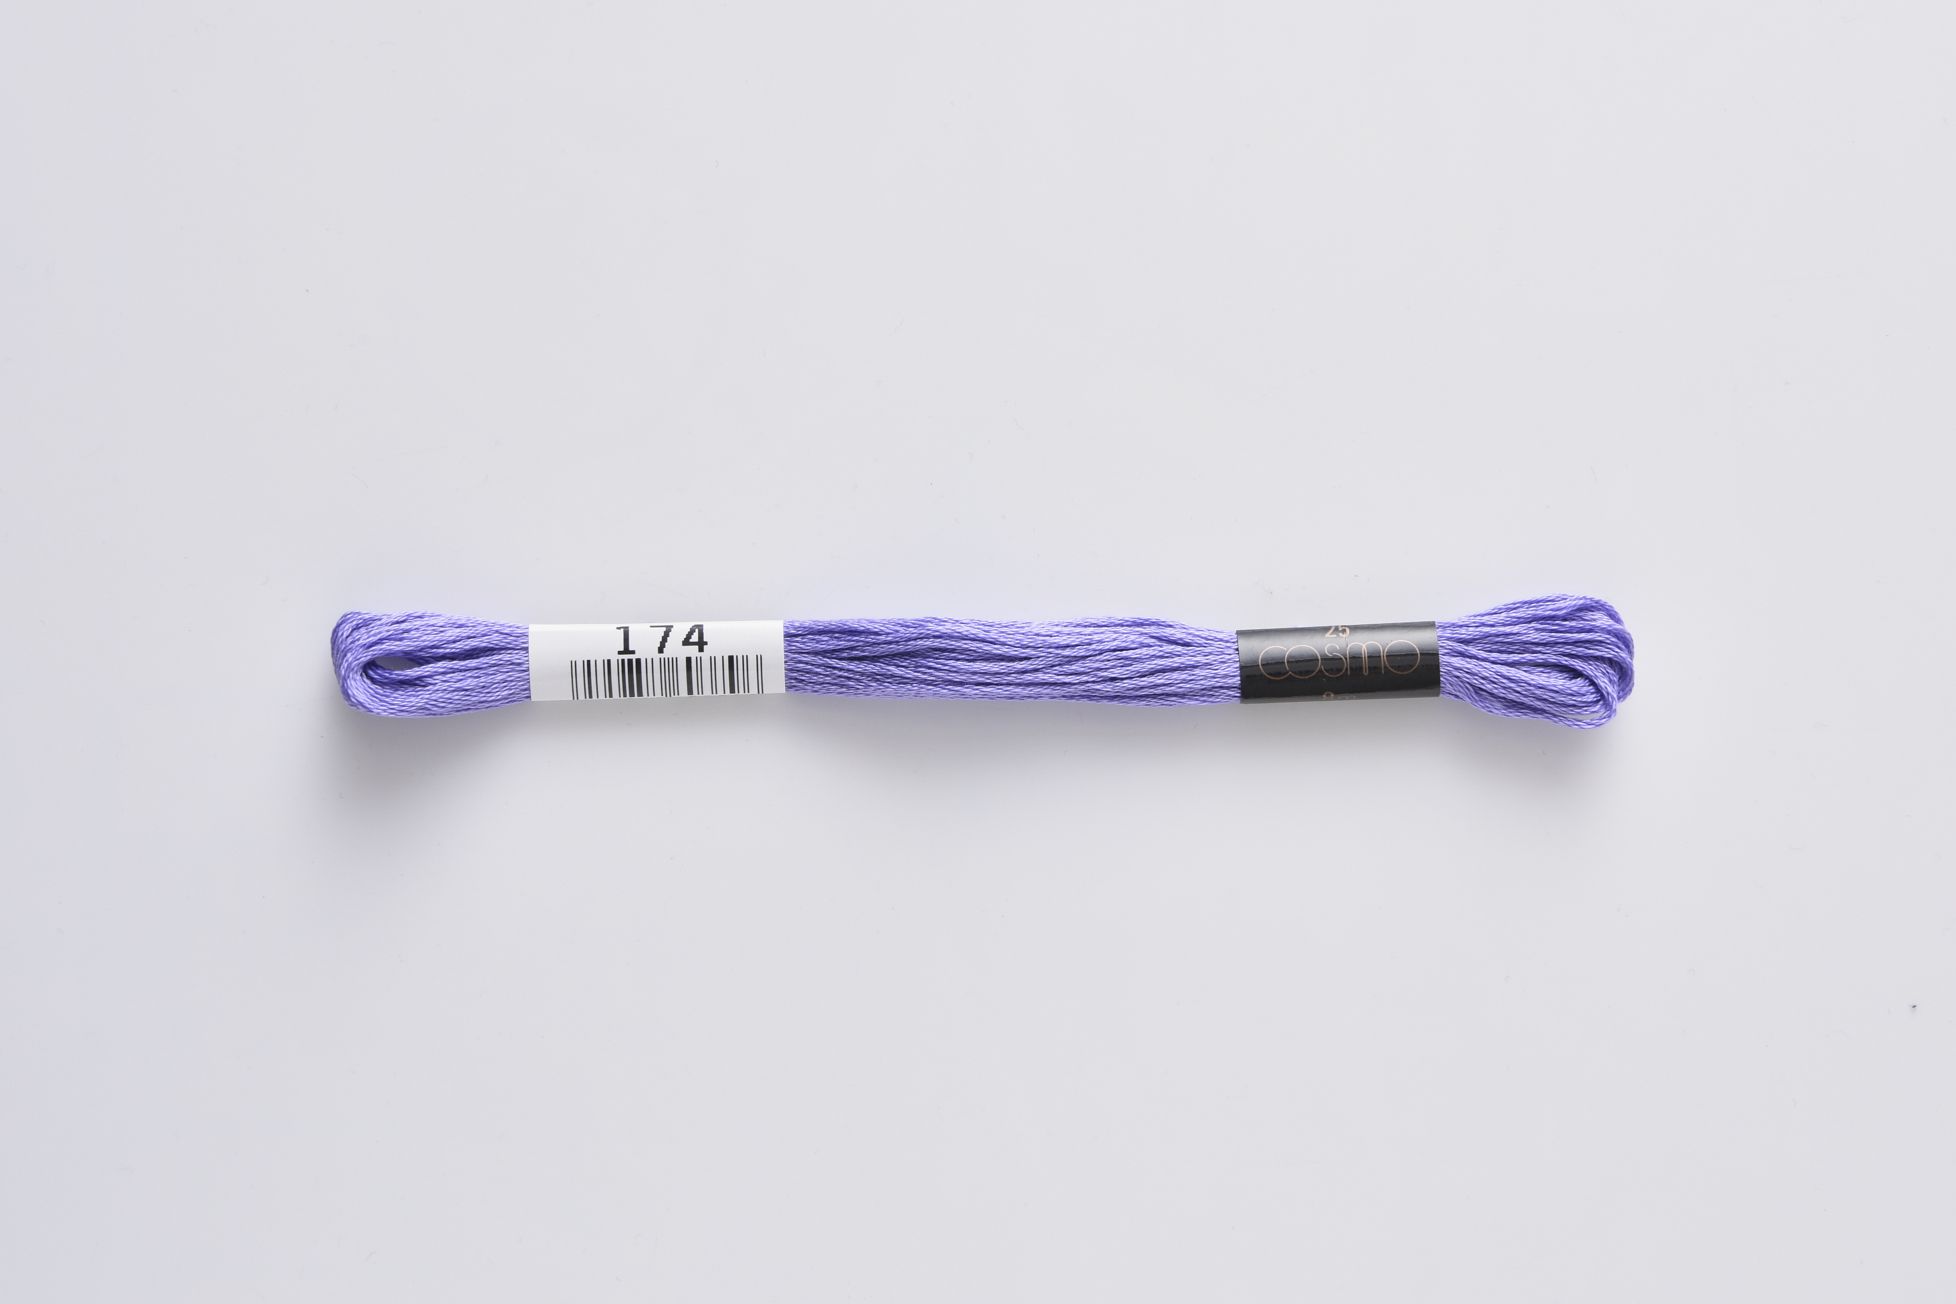 ■ COSMO #25 刺しゅう糸 ■ ◆25番刺しゅう糸　174番◆　 LECIEN がコスモ刺しゅう糸の取り扱いを始めたのは1950年。 当初は195色展開でしたが、より多くの人を魅了する配色を求め、現在では500色の色数を手掛けるようになりました。原料・製法・品質にこだわり、シルクのように輝く光沢に、ソフトな風合い、そして美しい発色を持つコスモ刺しゅう糸は日本国内にとどまらず、欧米をはじめオーストラリア、台湾など世界中の方に愛され、使用されています。 色あせ色落ちしにくい上品な光沢、匠の技術による美しい発色、プロも愛用する繊細なカラーバリエーションが魅力の手刺しゅう用糸（6本あま撚り）。 高級超長綿を使用しています。 ◆ネコポスは合計20本までご利用可能です。 　上記を超える場合は宅配便での配送になります。 　ネコポス、宅急便の詳細については以下を必ずご確認ください。 ◆在庫の都合上、メーカー発注が必要な場合があります。 ◆画像やモニターによって実際の色合いと異なる場合があります。 ◆ご購入数により配送料金が割増になる場合があります。その場合別途メールでご確認させていただきます。 ■ COSMO #25 刺しゅう糸 ■ 　 ◆素材　　：綿100％　 ◆カラー　：174 ◆メーカー：ルシアン/lecien ◆こちらの商品ページは1本単位での販売です。 手芸の丸十はお客様の手作りのお時間を少しでも楽しいものにしていただけるよう、お手伝いさせていただきます。手芸用品 服飾用品 生地 毛糸 雑貨 ソーイング レシピ 編み図 パターン 刺しゅう 手作りキット レジン アクセサリー ぬいぐるみ 編みぐるみ 手づくり プレゼント ベビー用品 入園入学 オーガニック素材